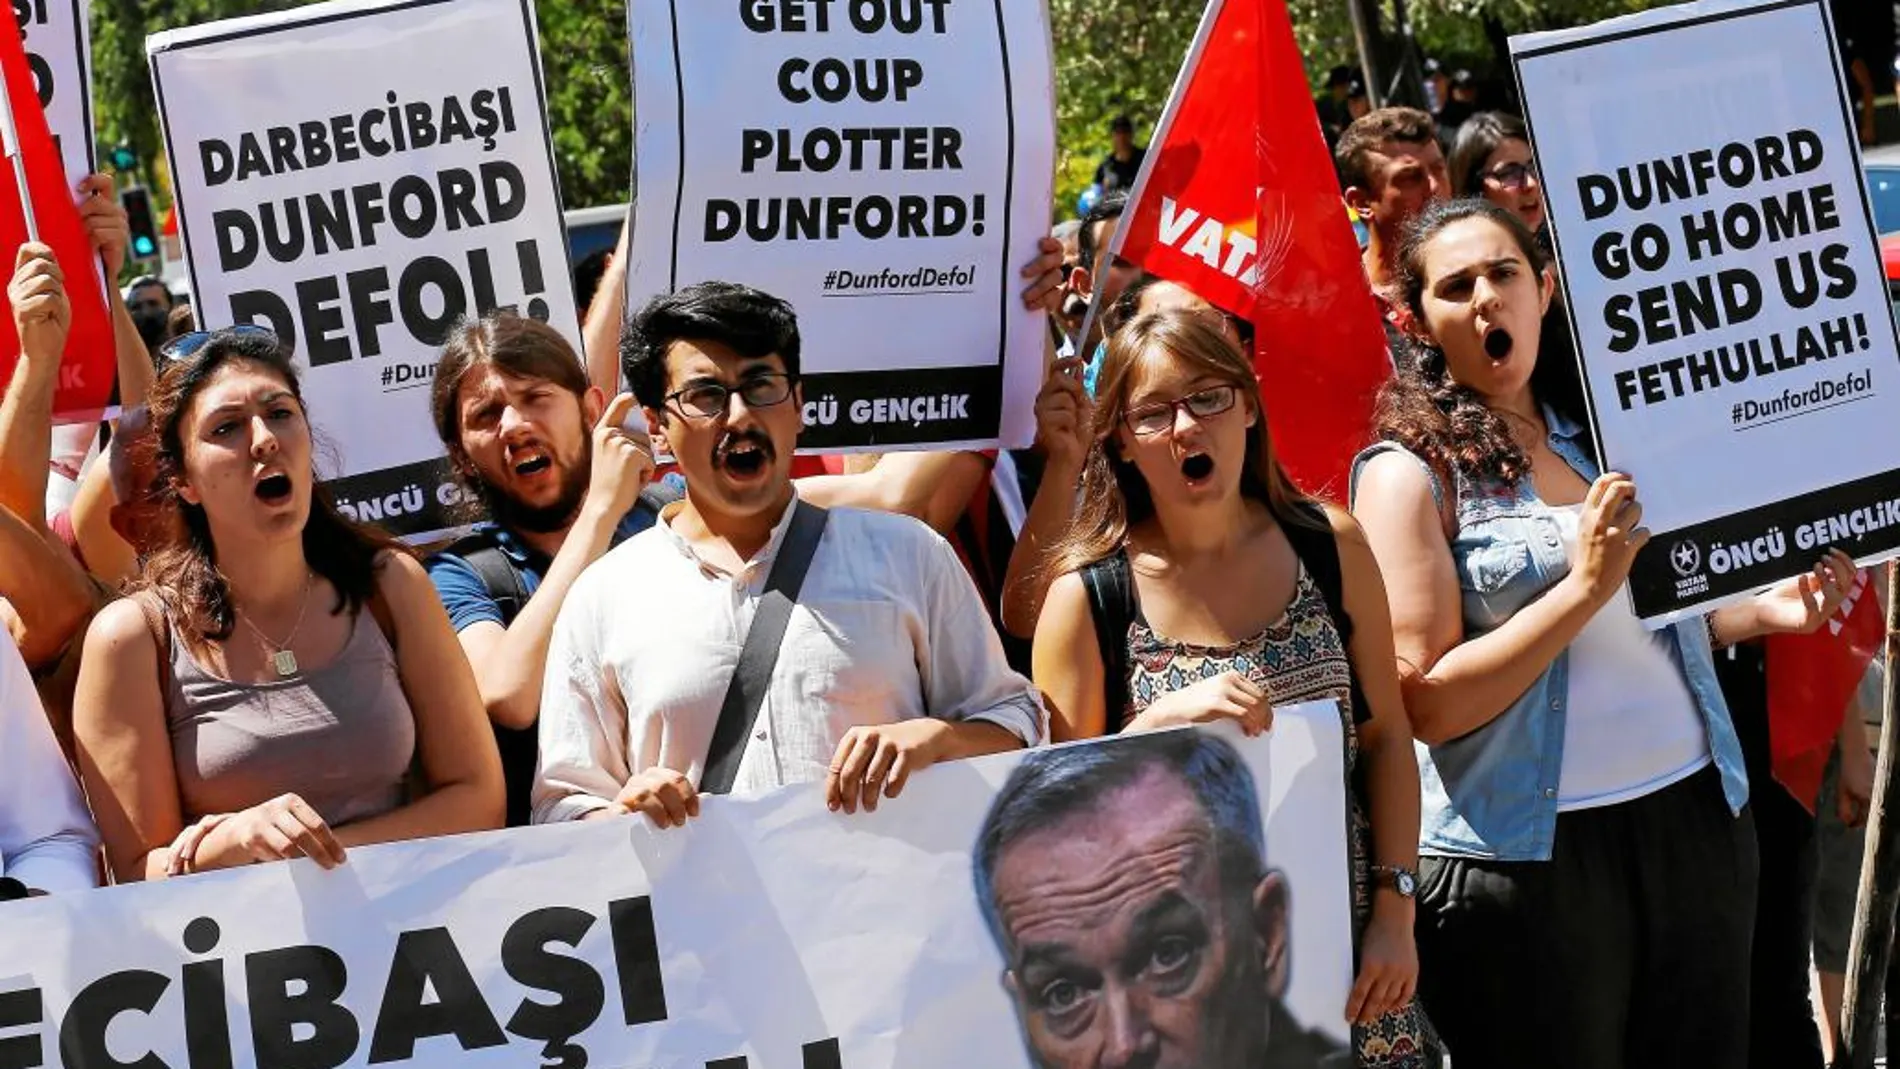 Manifestantes protestan en contra de la visita del comandante adjunto de la infantería de Marina americana, Joseph Dunford, delante de la embajada estadounidense en Turquía